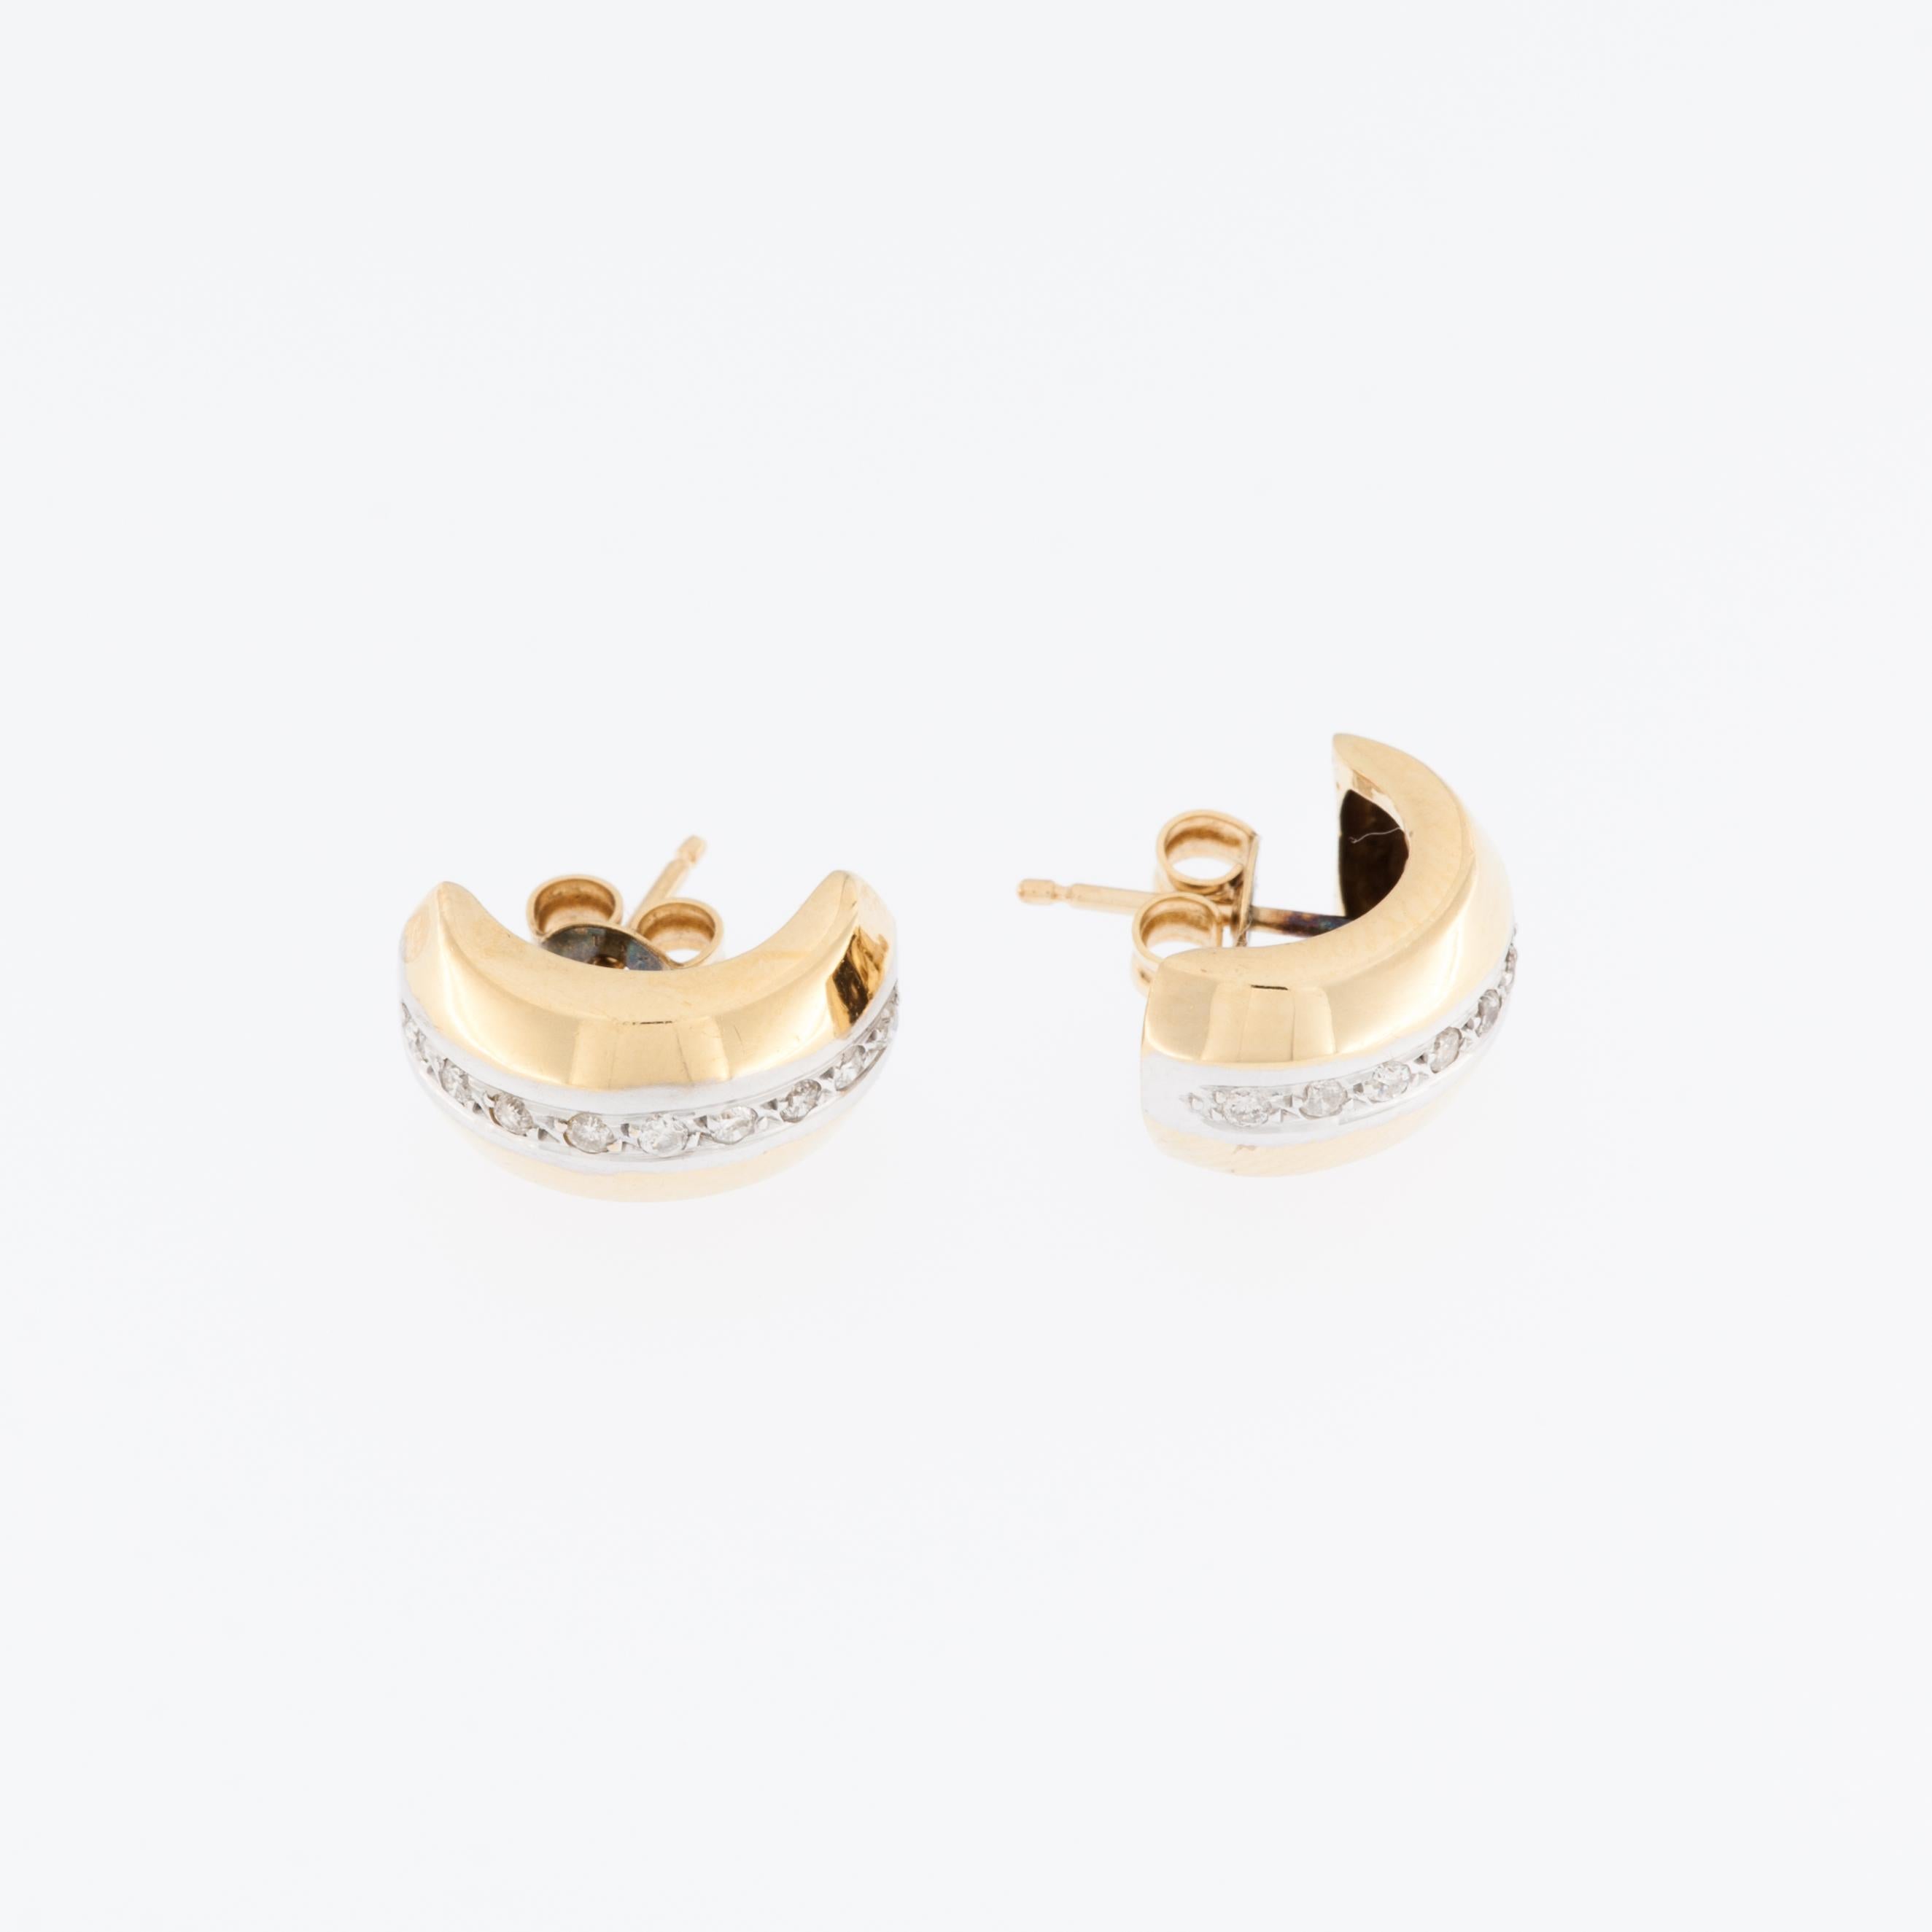 Die Schweizer Ohrringe aus 18-karätigem Gelb- und Weißgold mit Diamanten sind ein luxuriöses und exquisites Schmuckstück, das die zeitlose Schönheit von Gold mit dem strahlenden Glanz von Diamanten verbindet. 

Diese Ohrringe sind aus einer